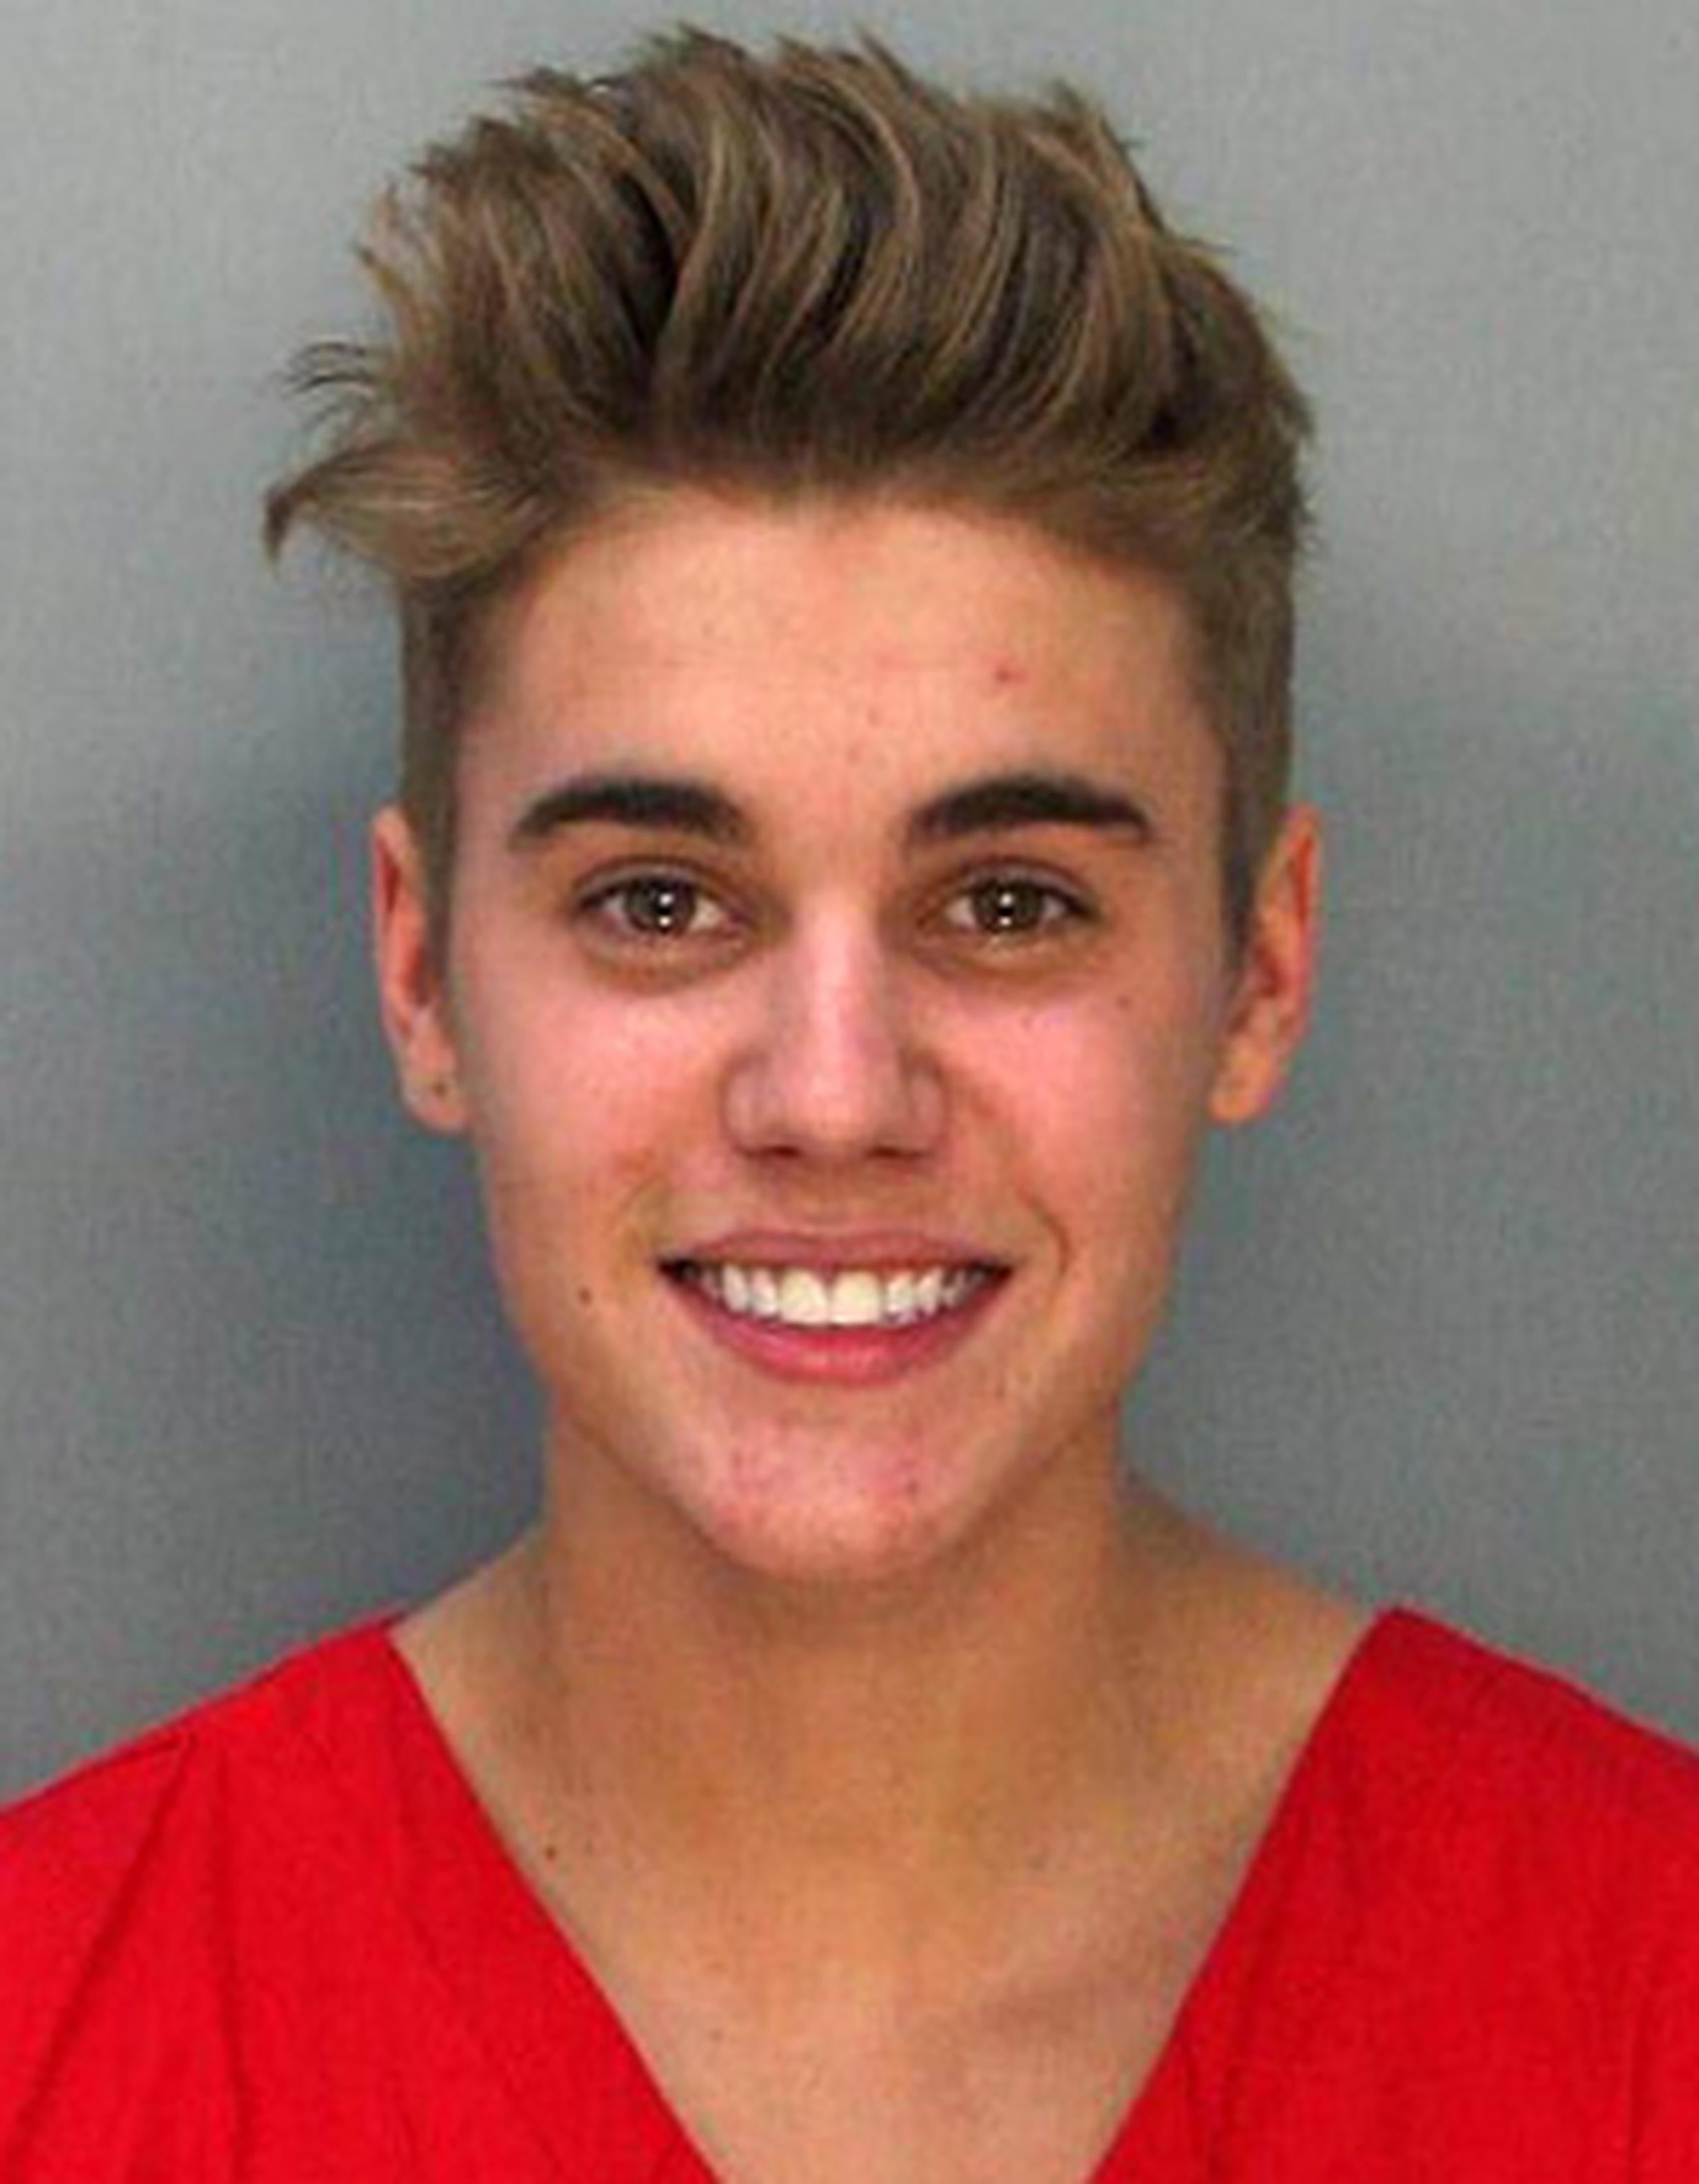 Bieber, según la Policía, admitió a los agentes tras su detención que había fumado marihuana, bebido unas cervezas e ingerido unas pastillas de prescripción antes de ser detenido. (AP)